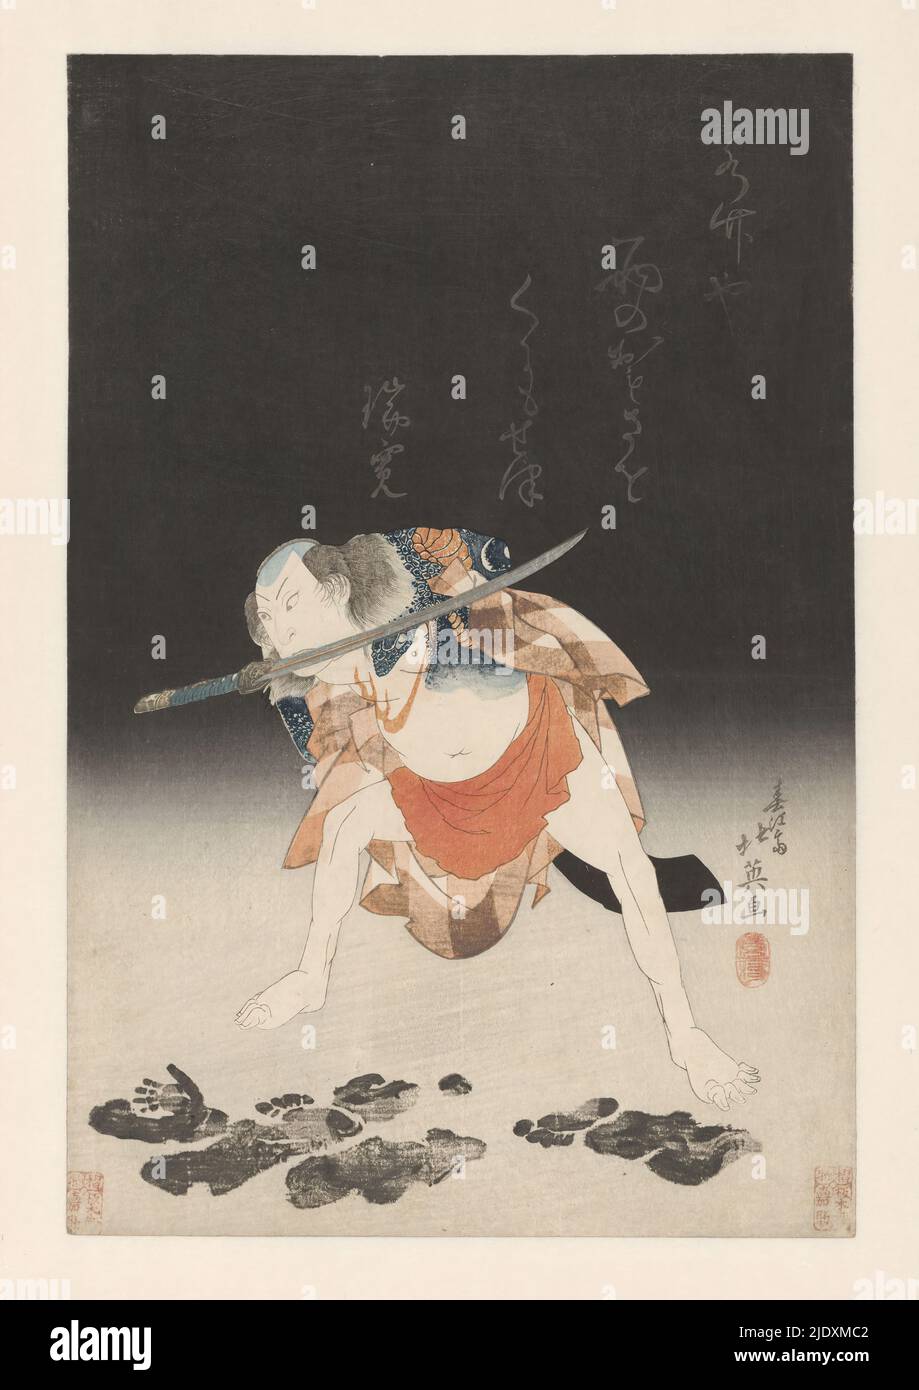 Arashi Rikan II als Danshichi Kurobei, der Schauspieler Arashi Rikan II als Danshichi Kurobei im Stück Natsu matsuri (das Sommerfest). Der tätowierte Danshichi Kurobei, gebogen, ein Schwert zwischen seinen Zähnen, Blick auf Hand und Fußabdrücke auf dem Boden., Druckerei: Shunbaisai Hokuei, (erwähnt auf Objekt), Japan, 1930 - 1935, Papier, Farbholzschnitt, Höhe 386 mm × Breite 259 mm Stockfoto